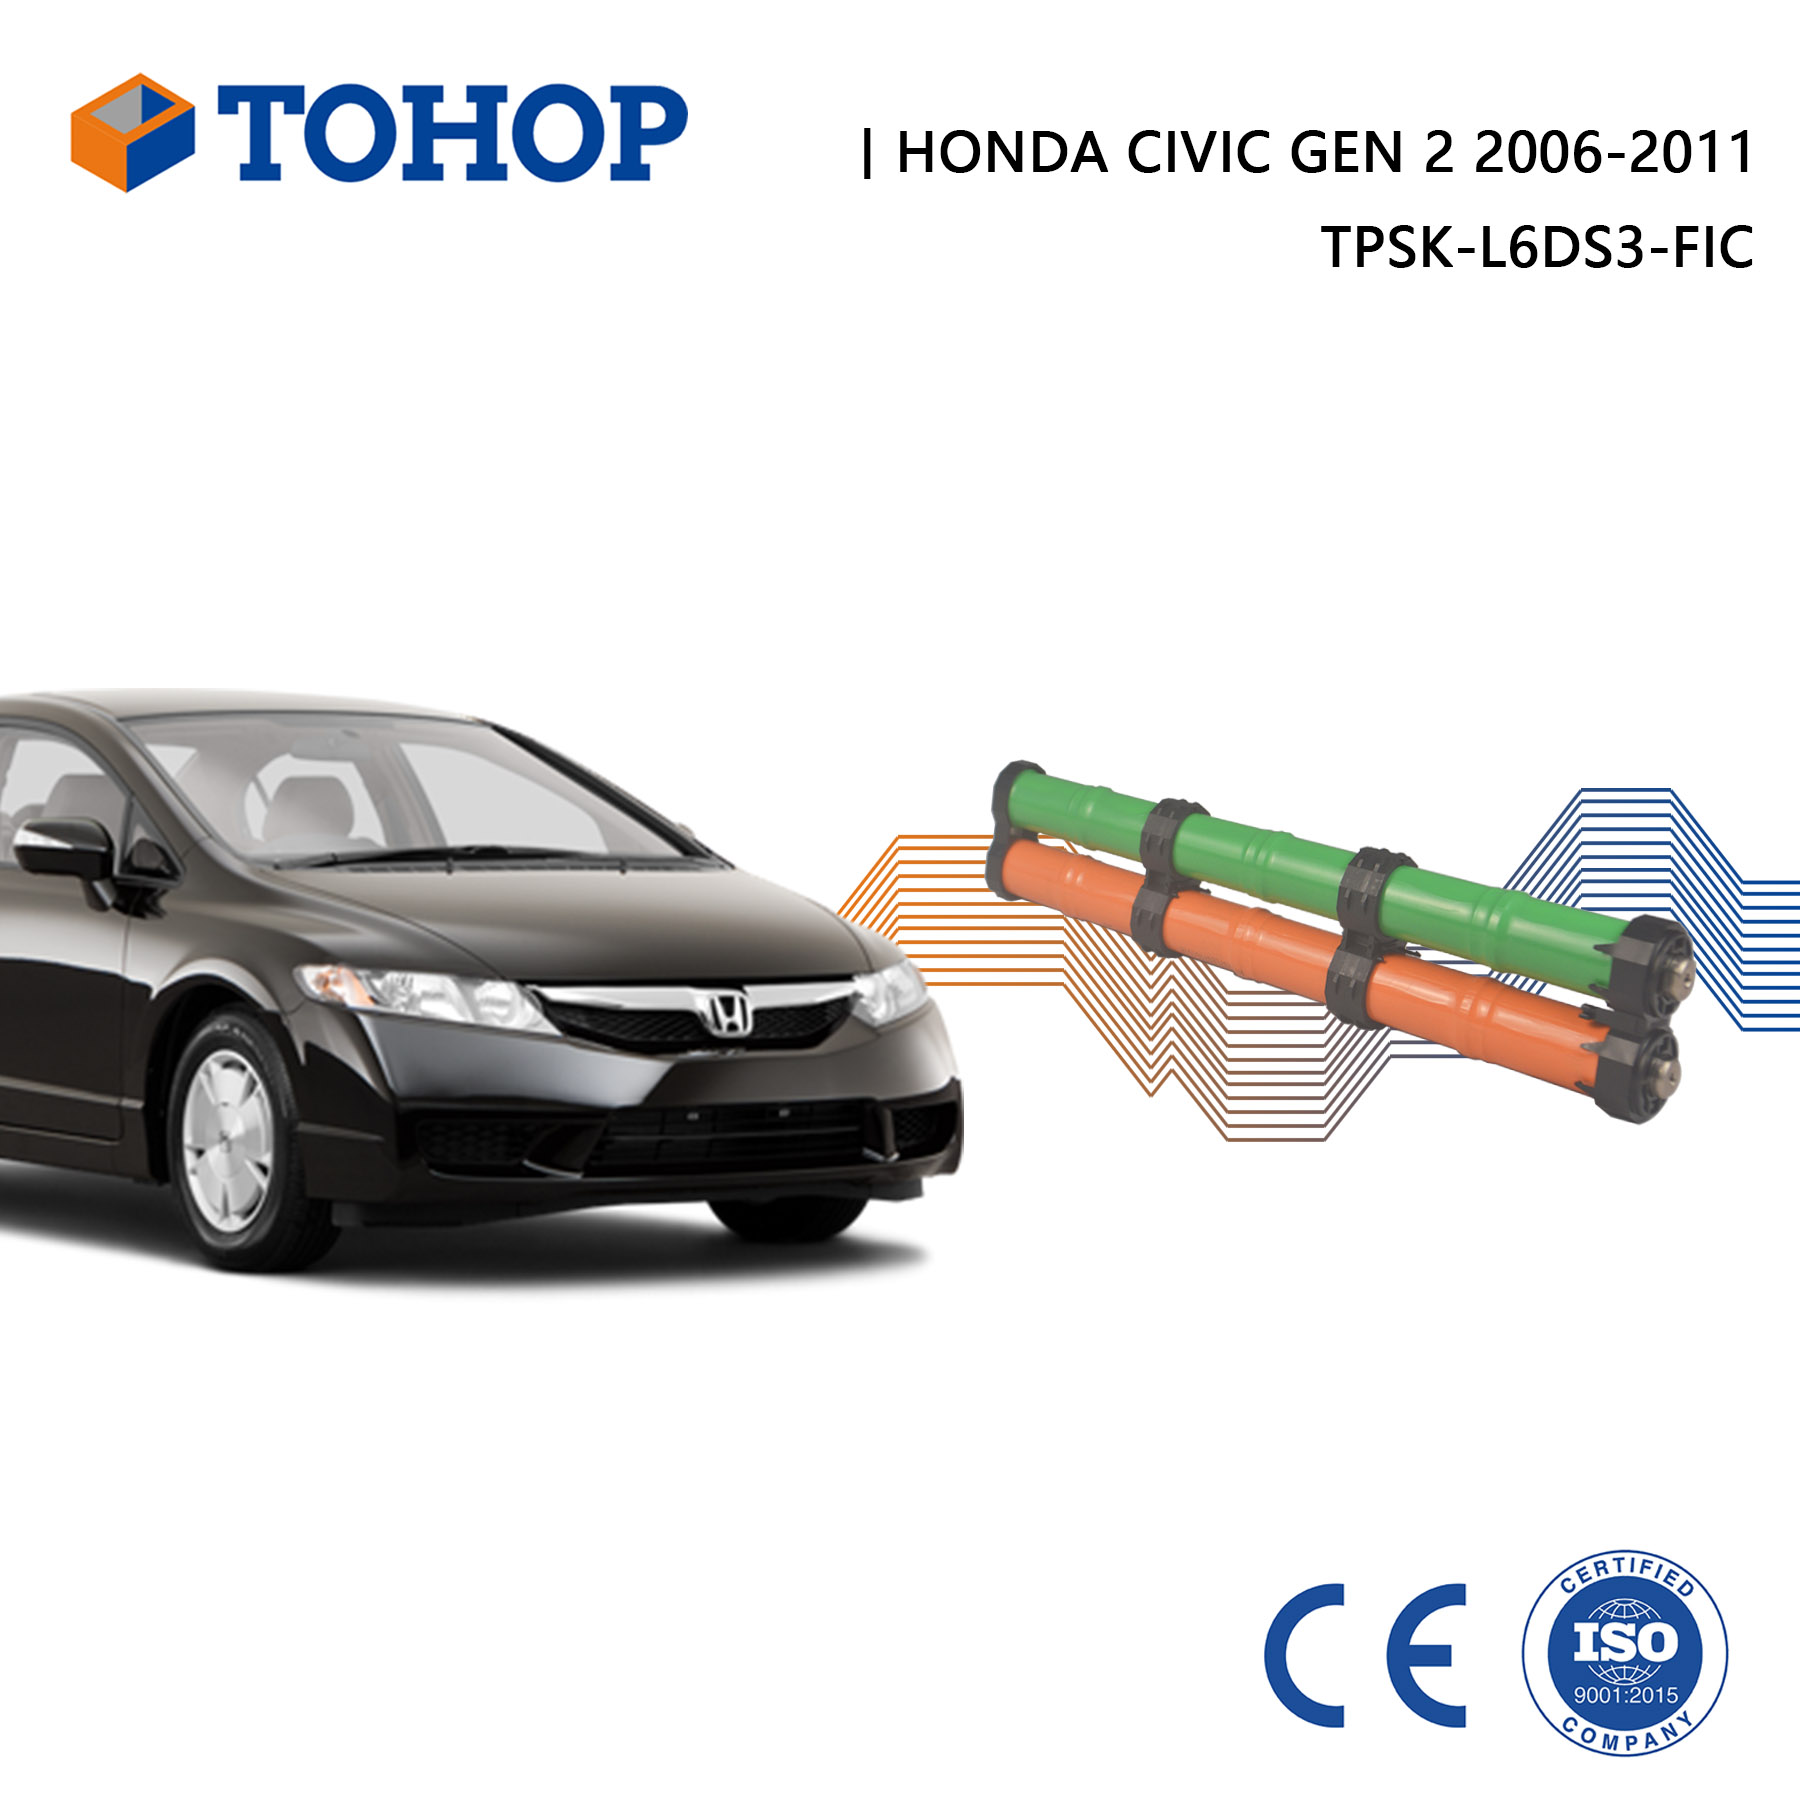 OEM Customized Gen.2 Civic 2007 Ima Hybrid Car Battery for Honda